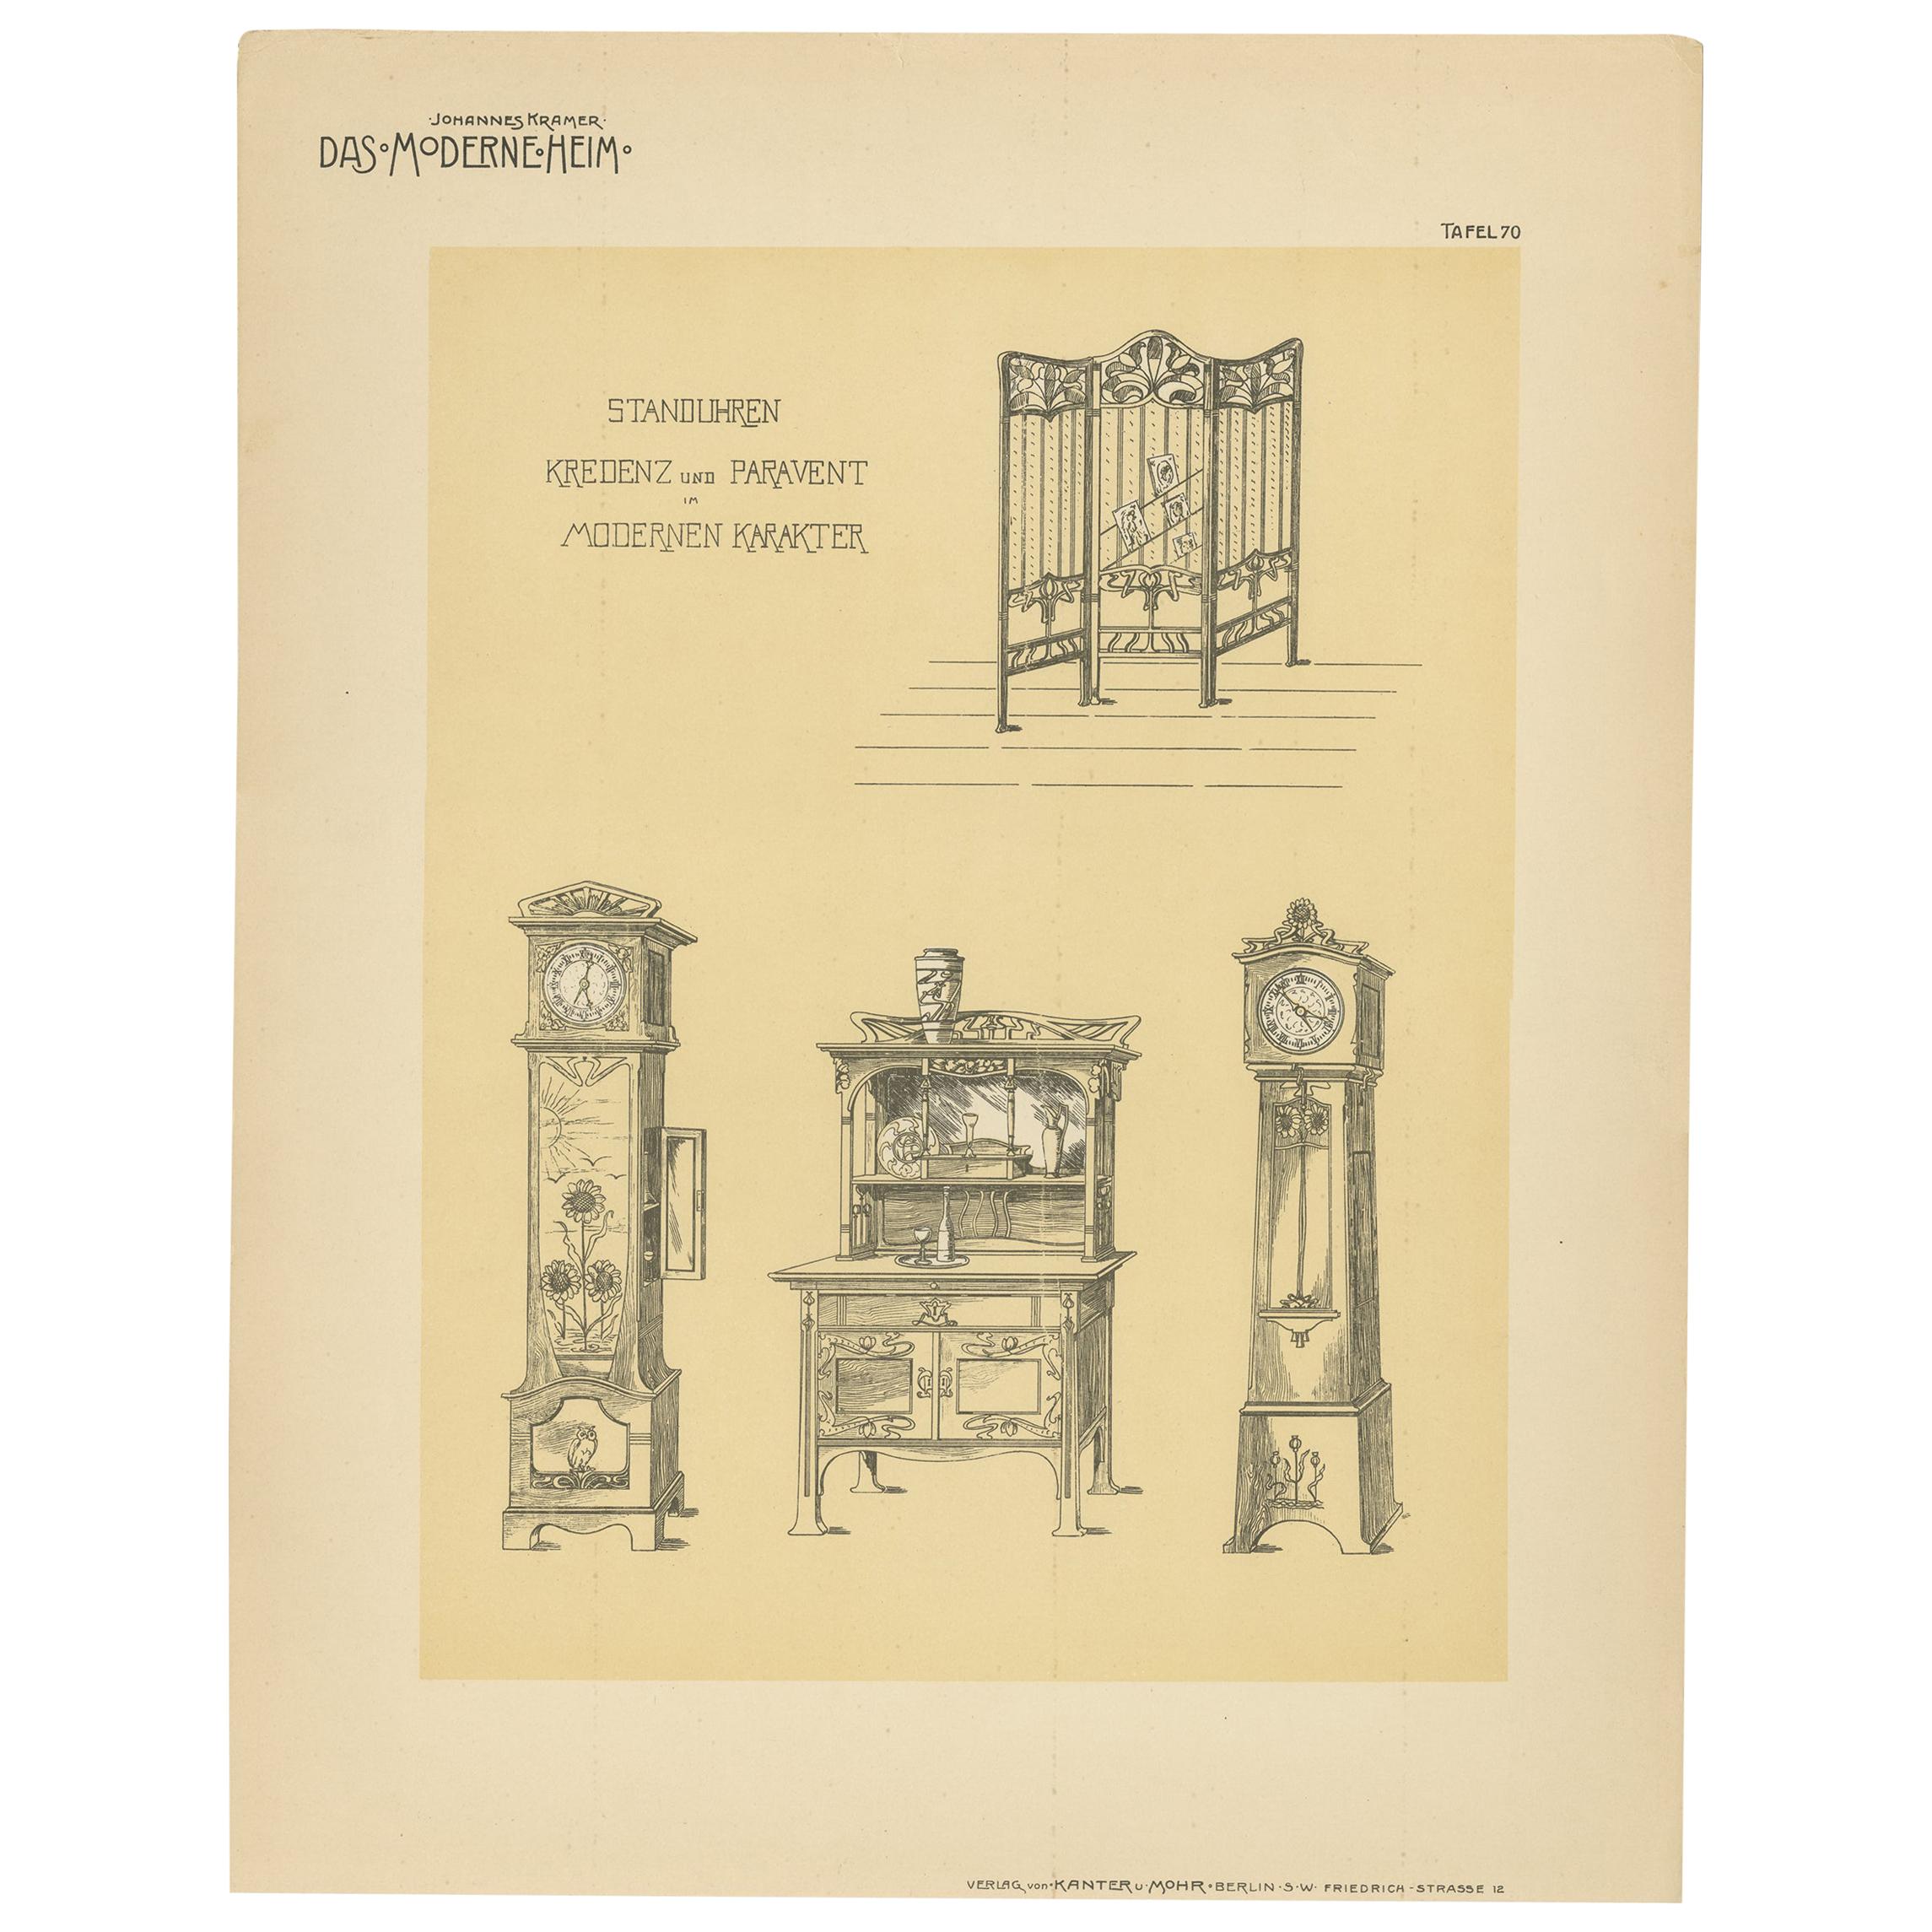 Impression de design ancien d'horloges et de meubles, vers 1910